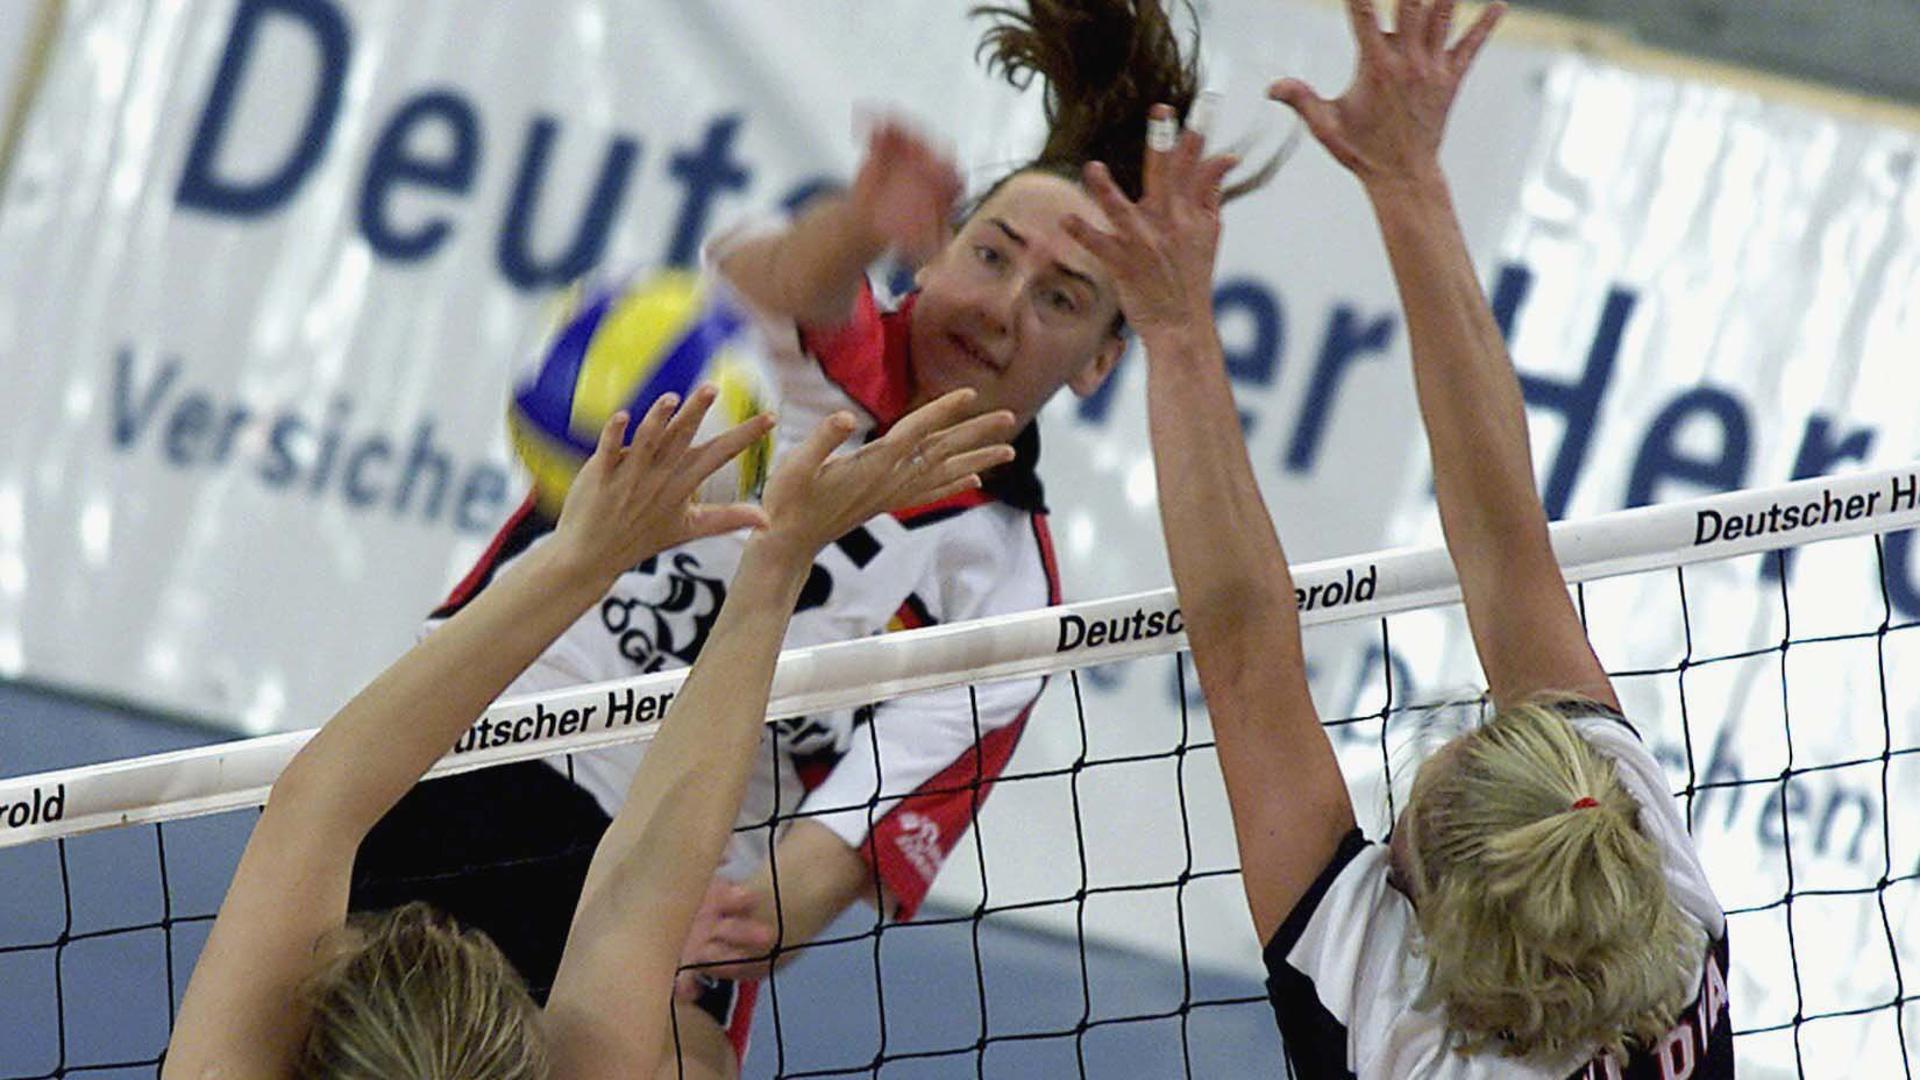 Sylvia Roll von der deutschen Volleyball Nationalmannschaft schmettert.